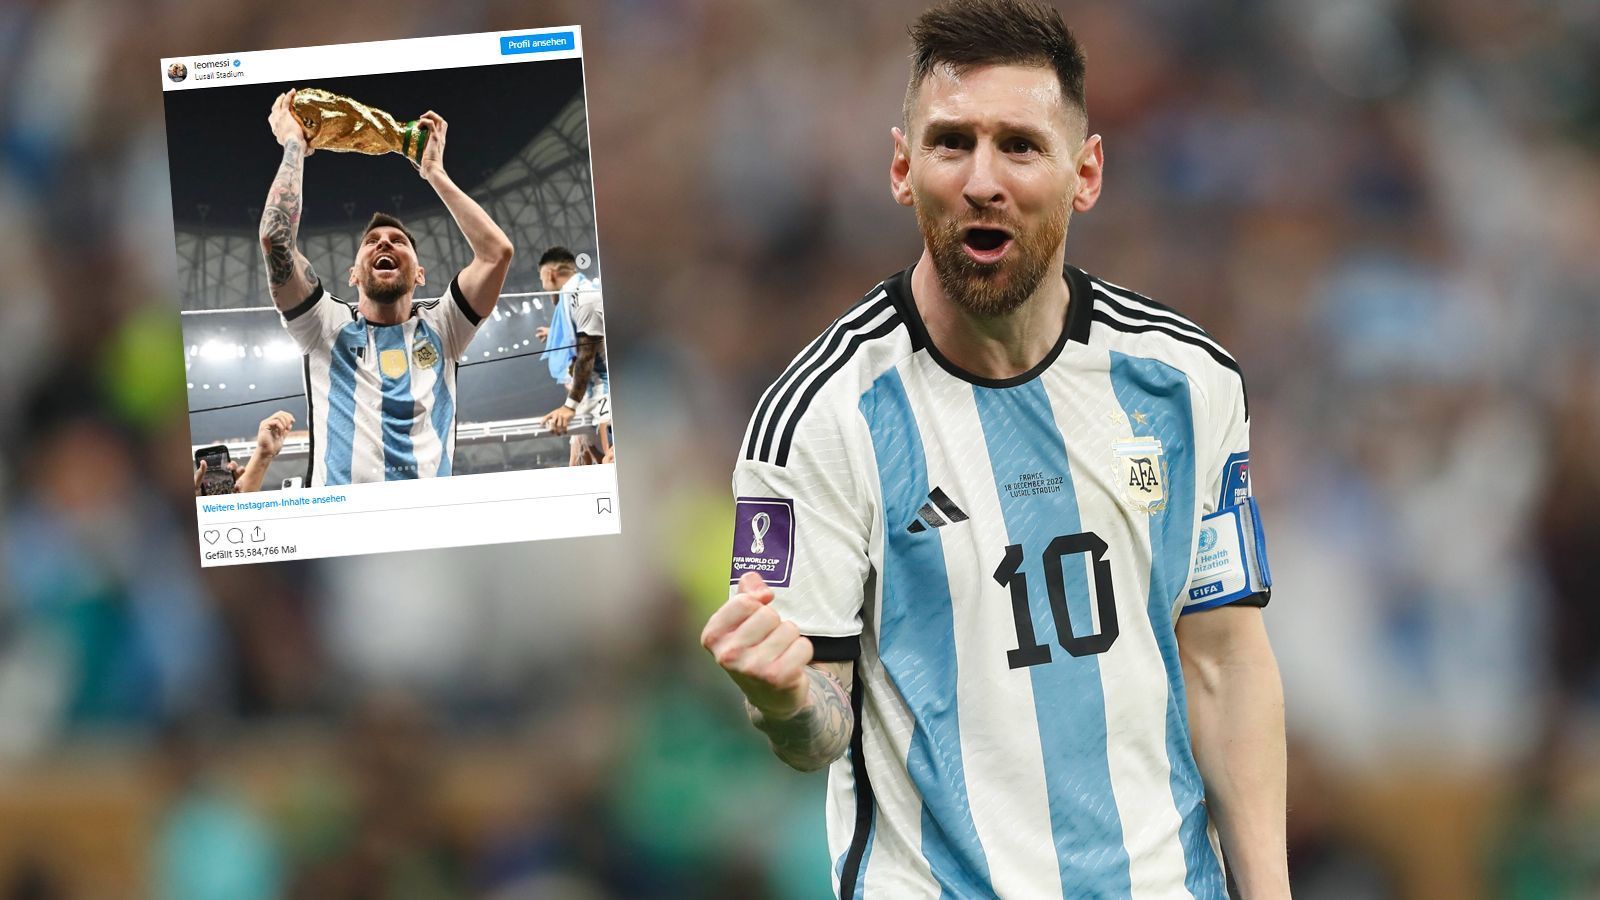 
                <strong>2022: Messi geht viral</strong><br>
                Nach dem Gewinn des WM-Titels setzt sich Messi auch auf Social-Media die Krone auf. Auf Instagram posiert der Argentinier mit dem WM-Pokal und lässt in der Bildbeschreibung seinen Gefühlen freien Lauf. Seine Fans sind überwältigt von diesem Beitrag und liken was das Zeug hält. Mehr als 56,5 Millionen Konten drückten bislang auf den "Gefällt-mir-Button". Damit entreißt der Außnahmespieler nicht nur seinem portugisieschen Konkurrenten Cristiano Ronaldo den Rekord für den meist gelikten Beitrag eines Sportlers auf Social Media, sondern stellt auch eine neue Bestmarke für den Post mit den meisten "Gefällt-mir-Angaben" auf der gesamten Plattform auf. Messis Beitrag löst nämlich das World-Rekord-Egg, das rund 56 Millionen Likes bekam, ab. 
              